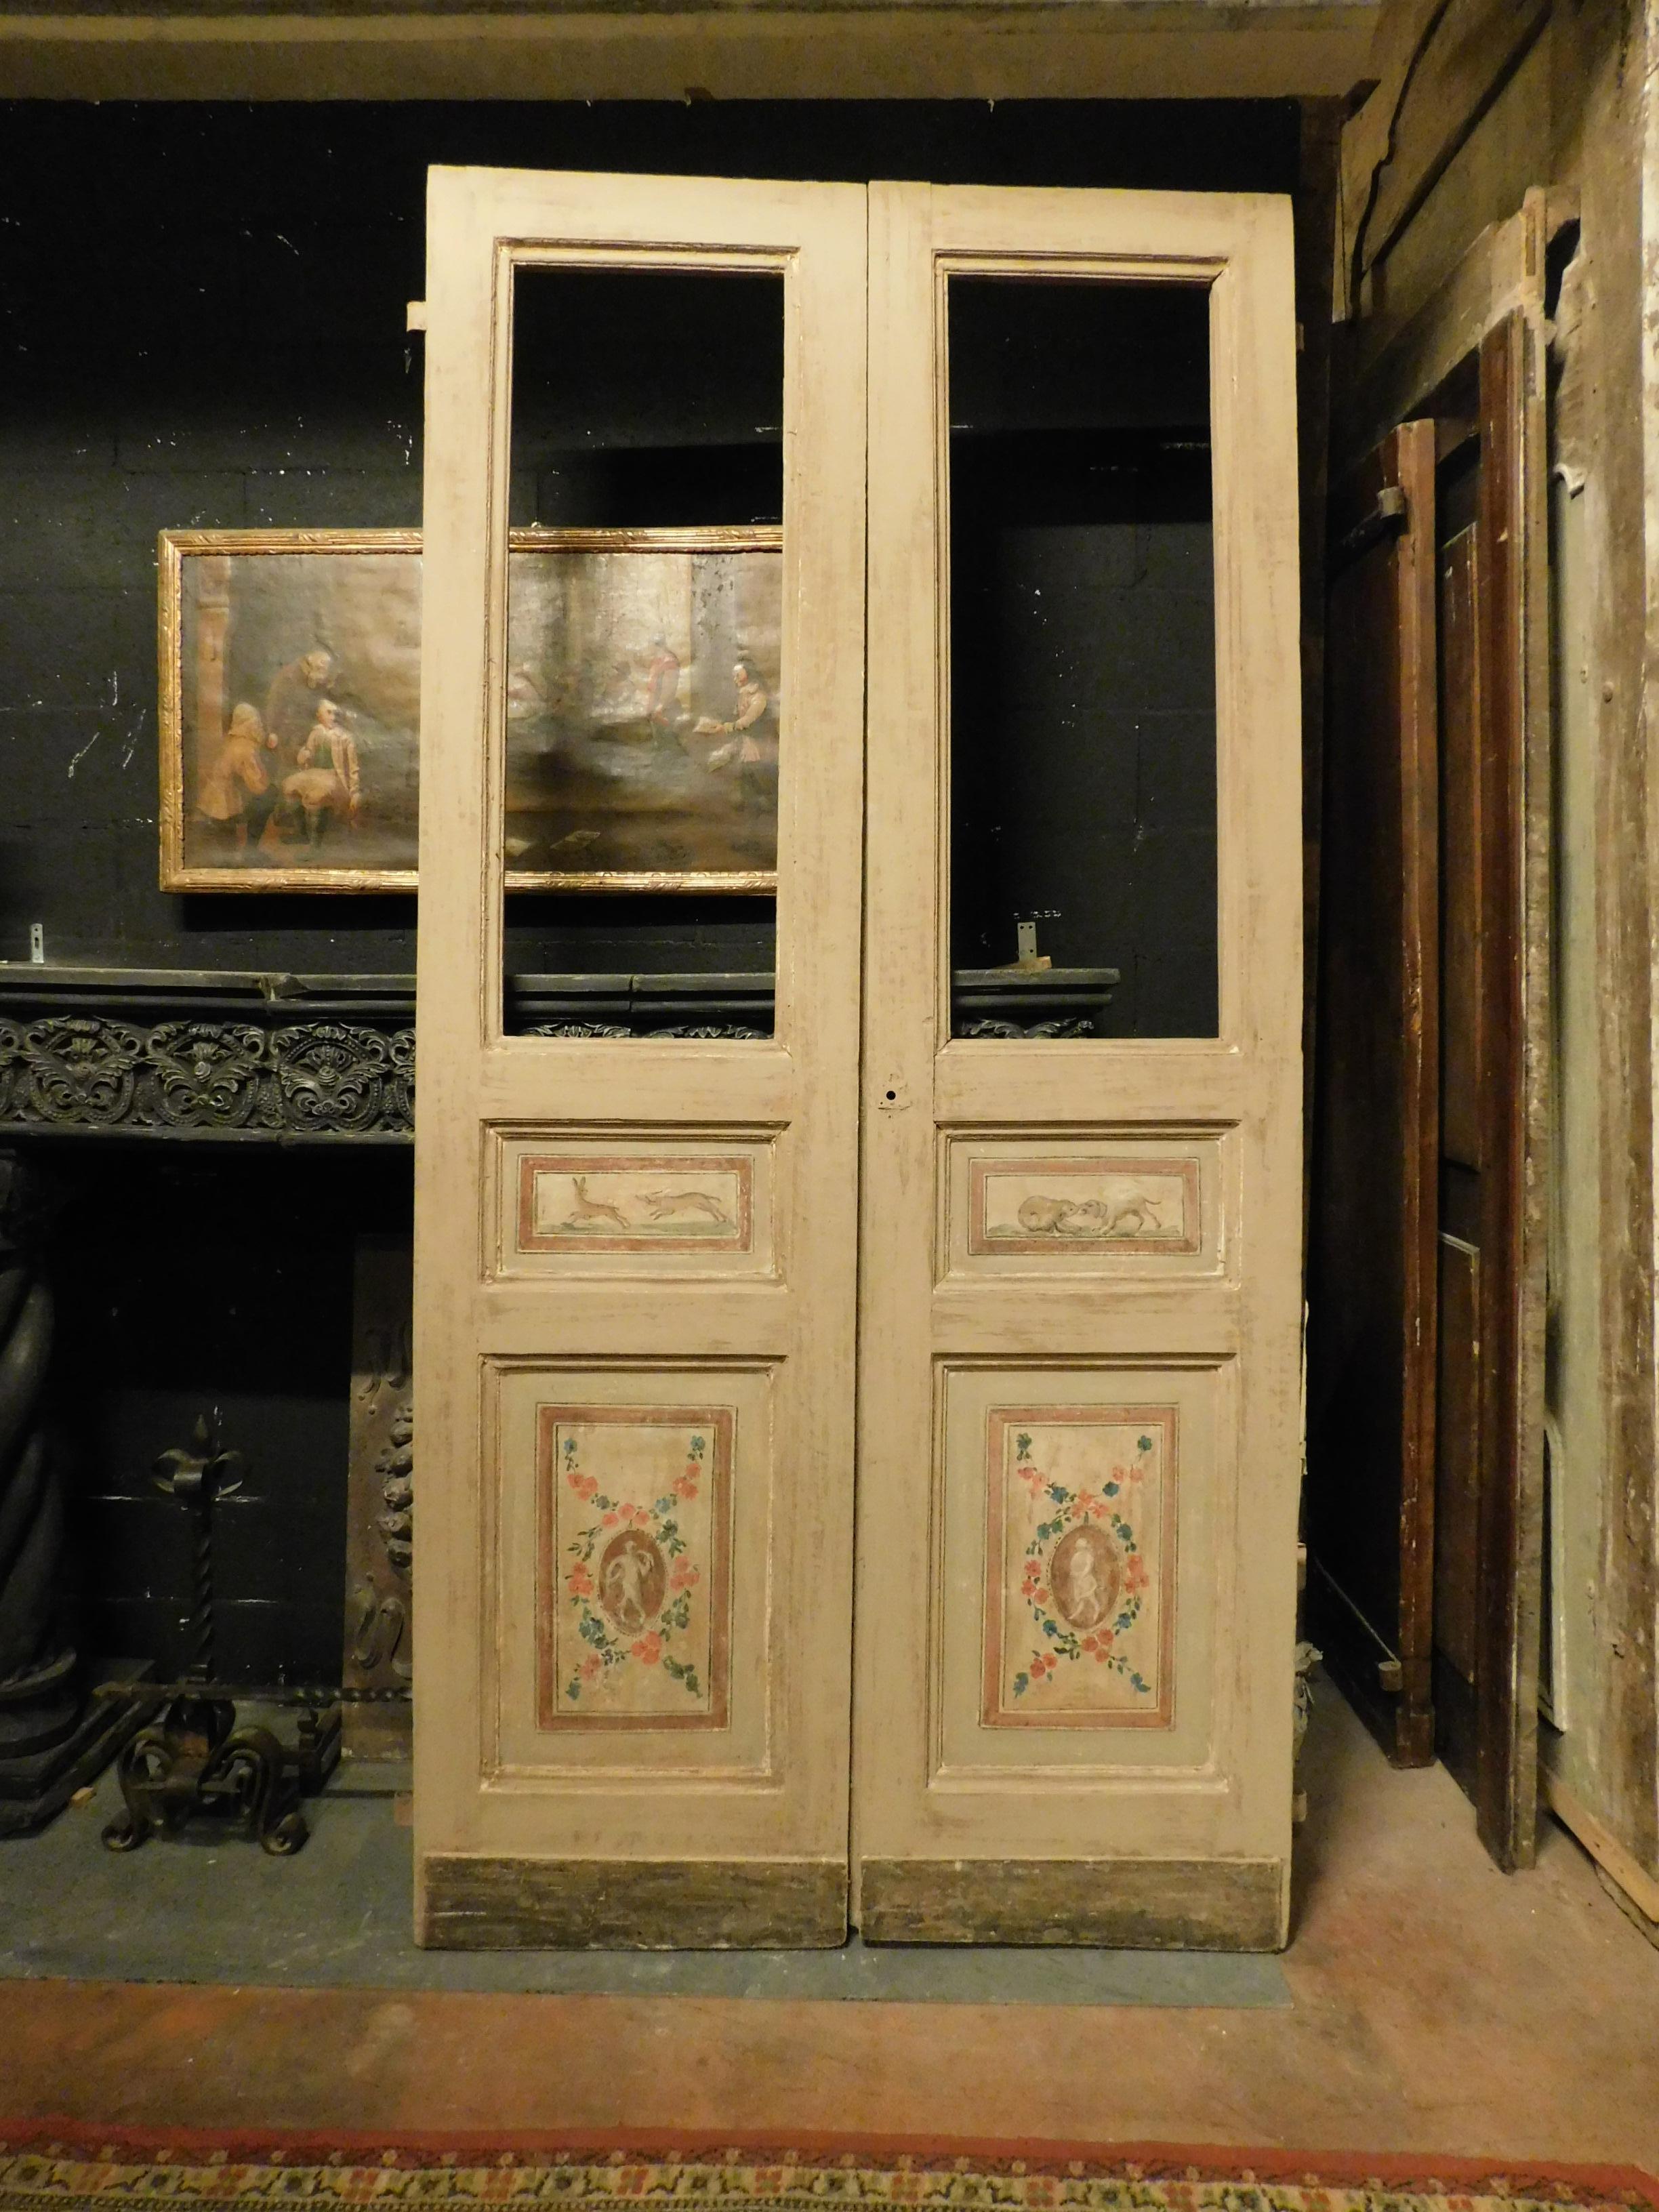 Ancienne porte intérieure vitrée, à double battant avec panneaux sculptés et peintures originales, peinte et finie sur les deux côtés, belle patine d'époque, fabriquée à la main à la fin du XVIIIe siècle pour une maison en Italie.
Il a des fers à